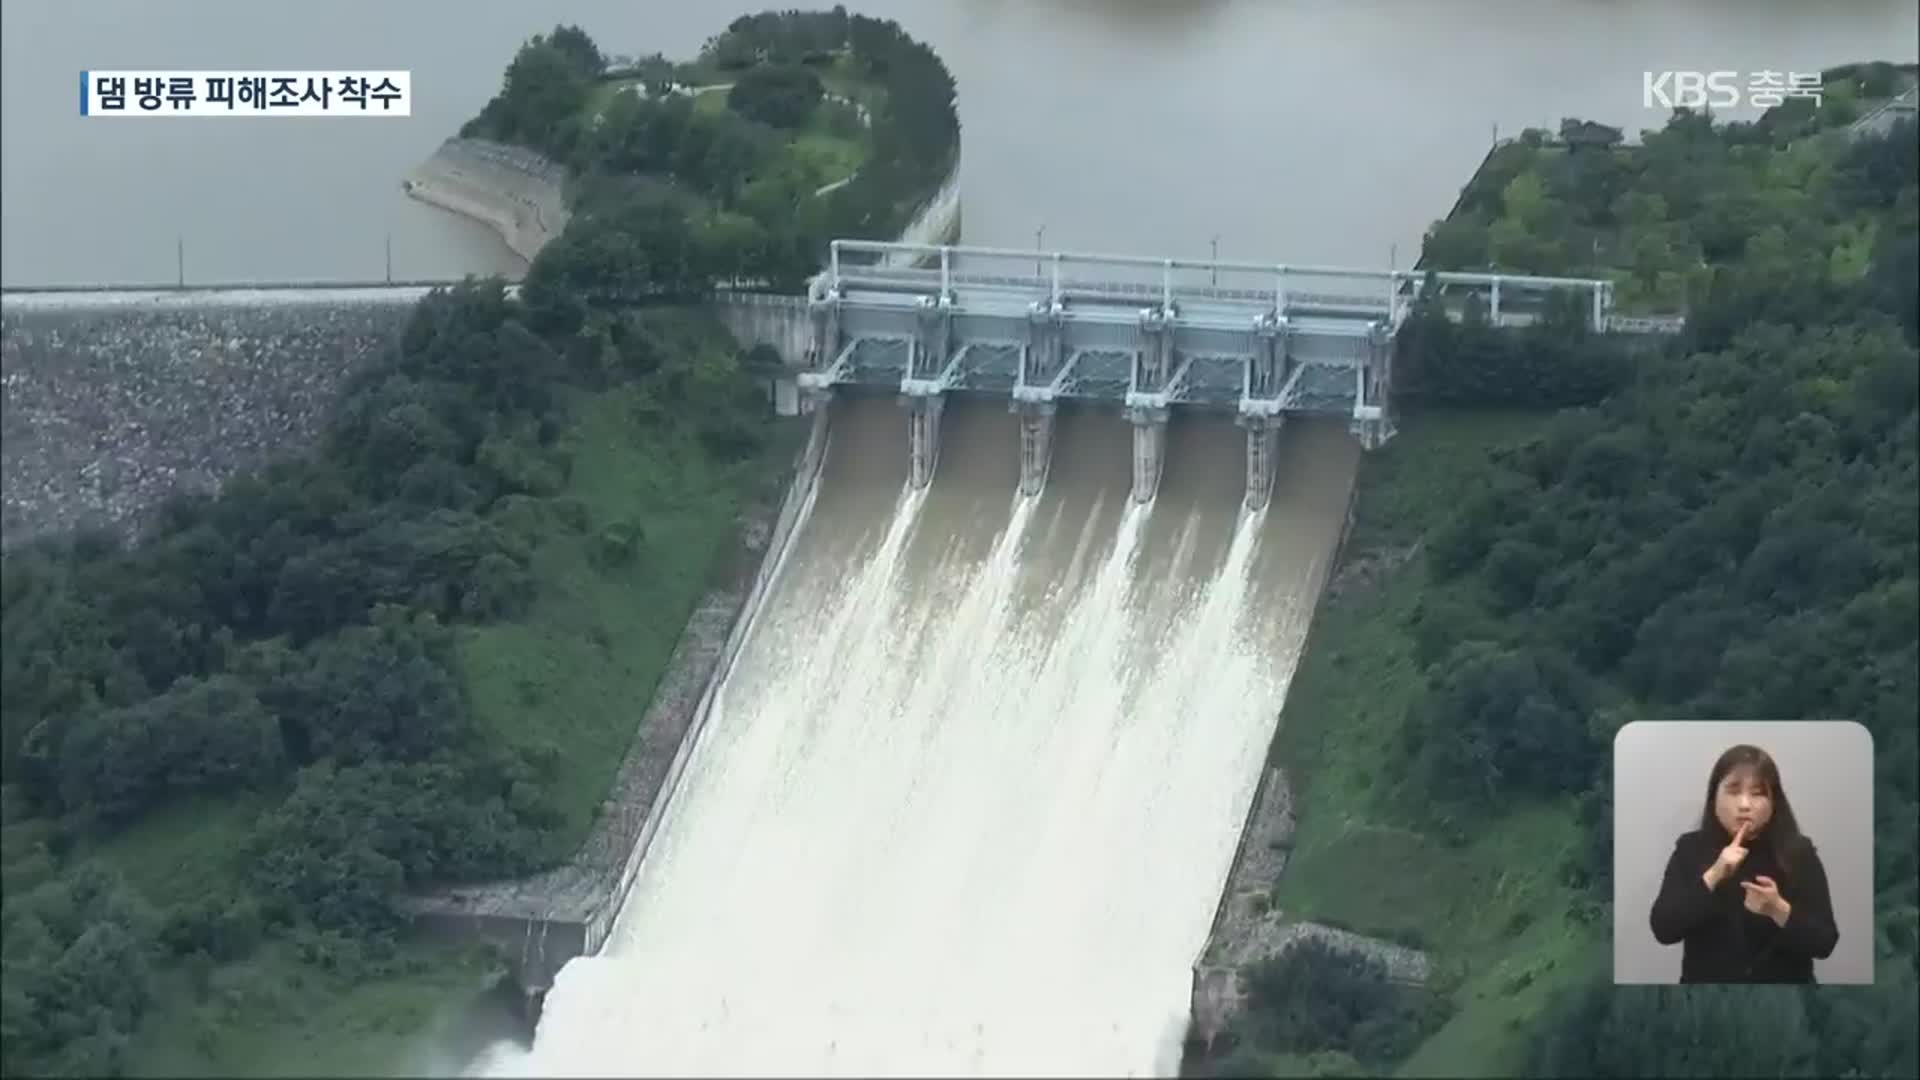 댐 방류 피해, 6개월 만에 원인 조사… 보상은 언제?